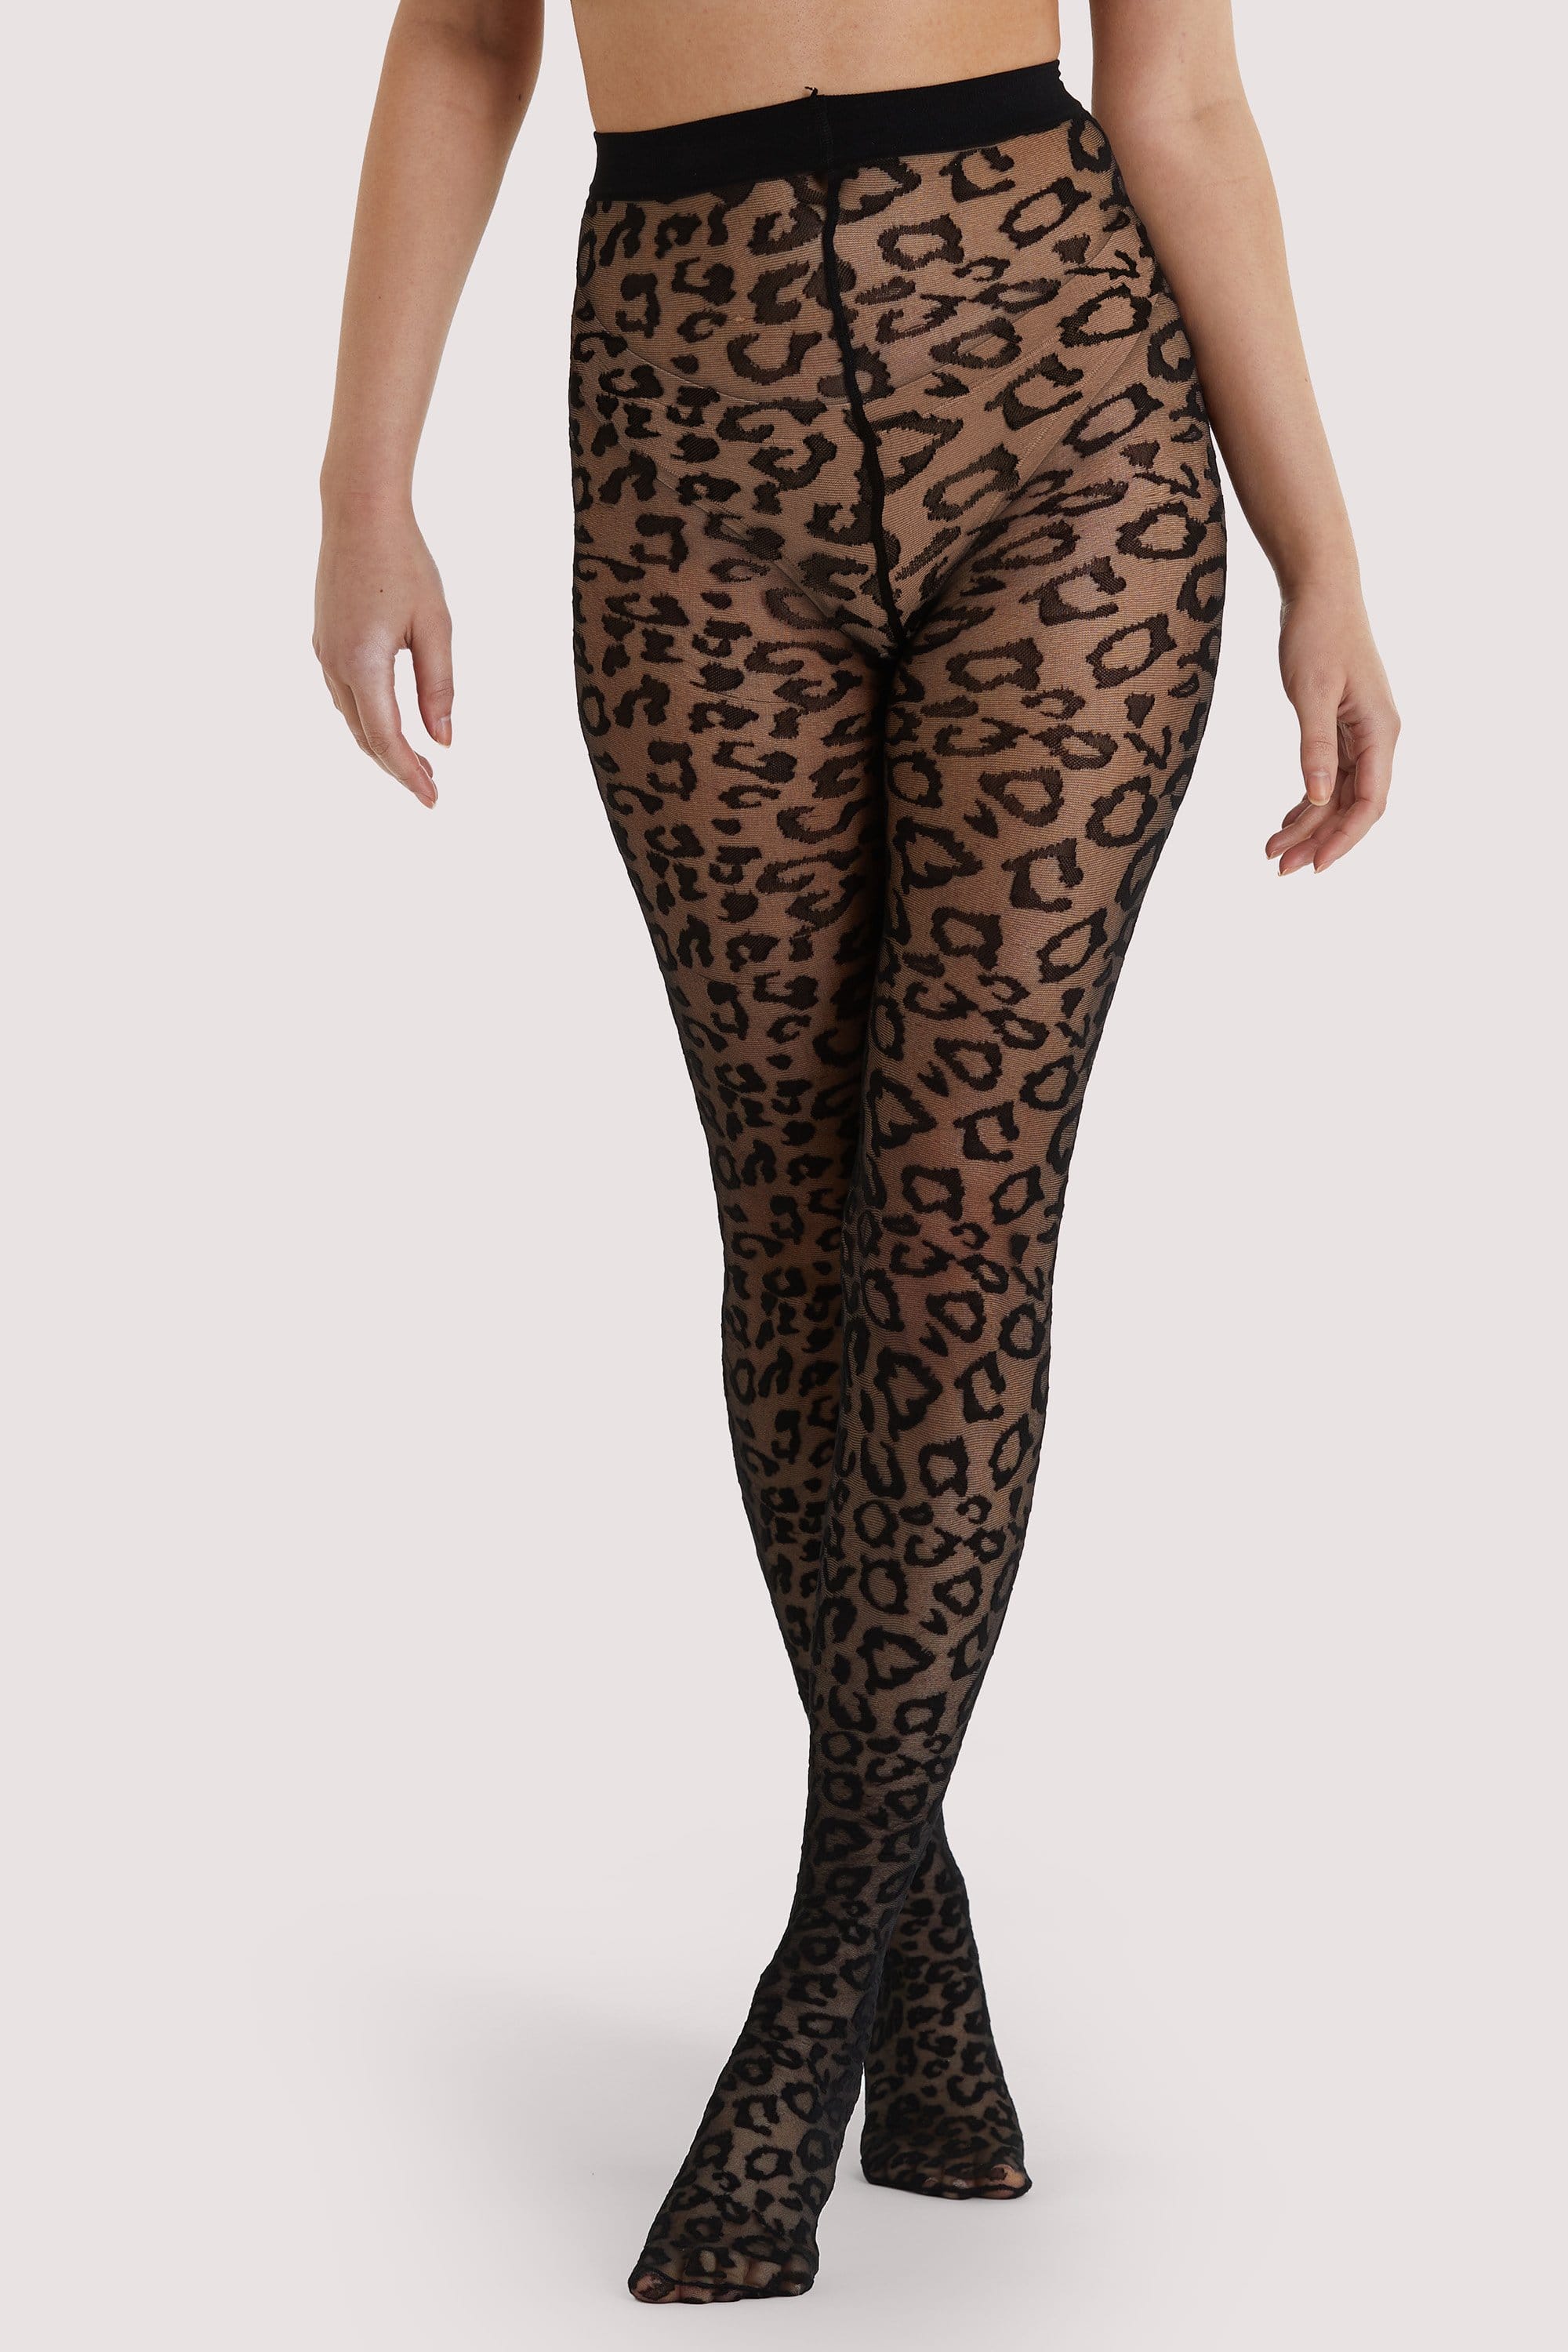 Leopard Knit Tights - Black US 4 - 18